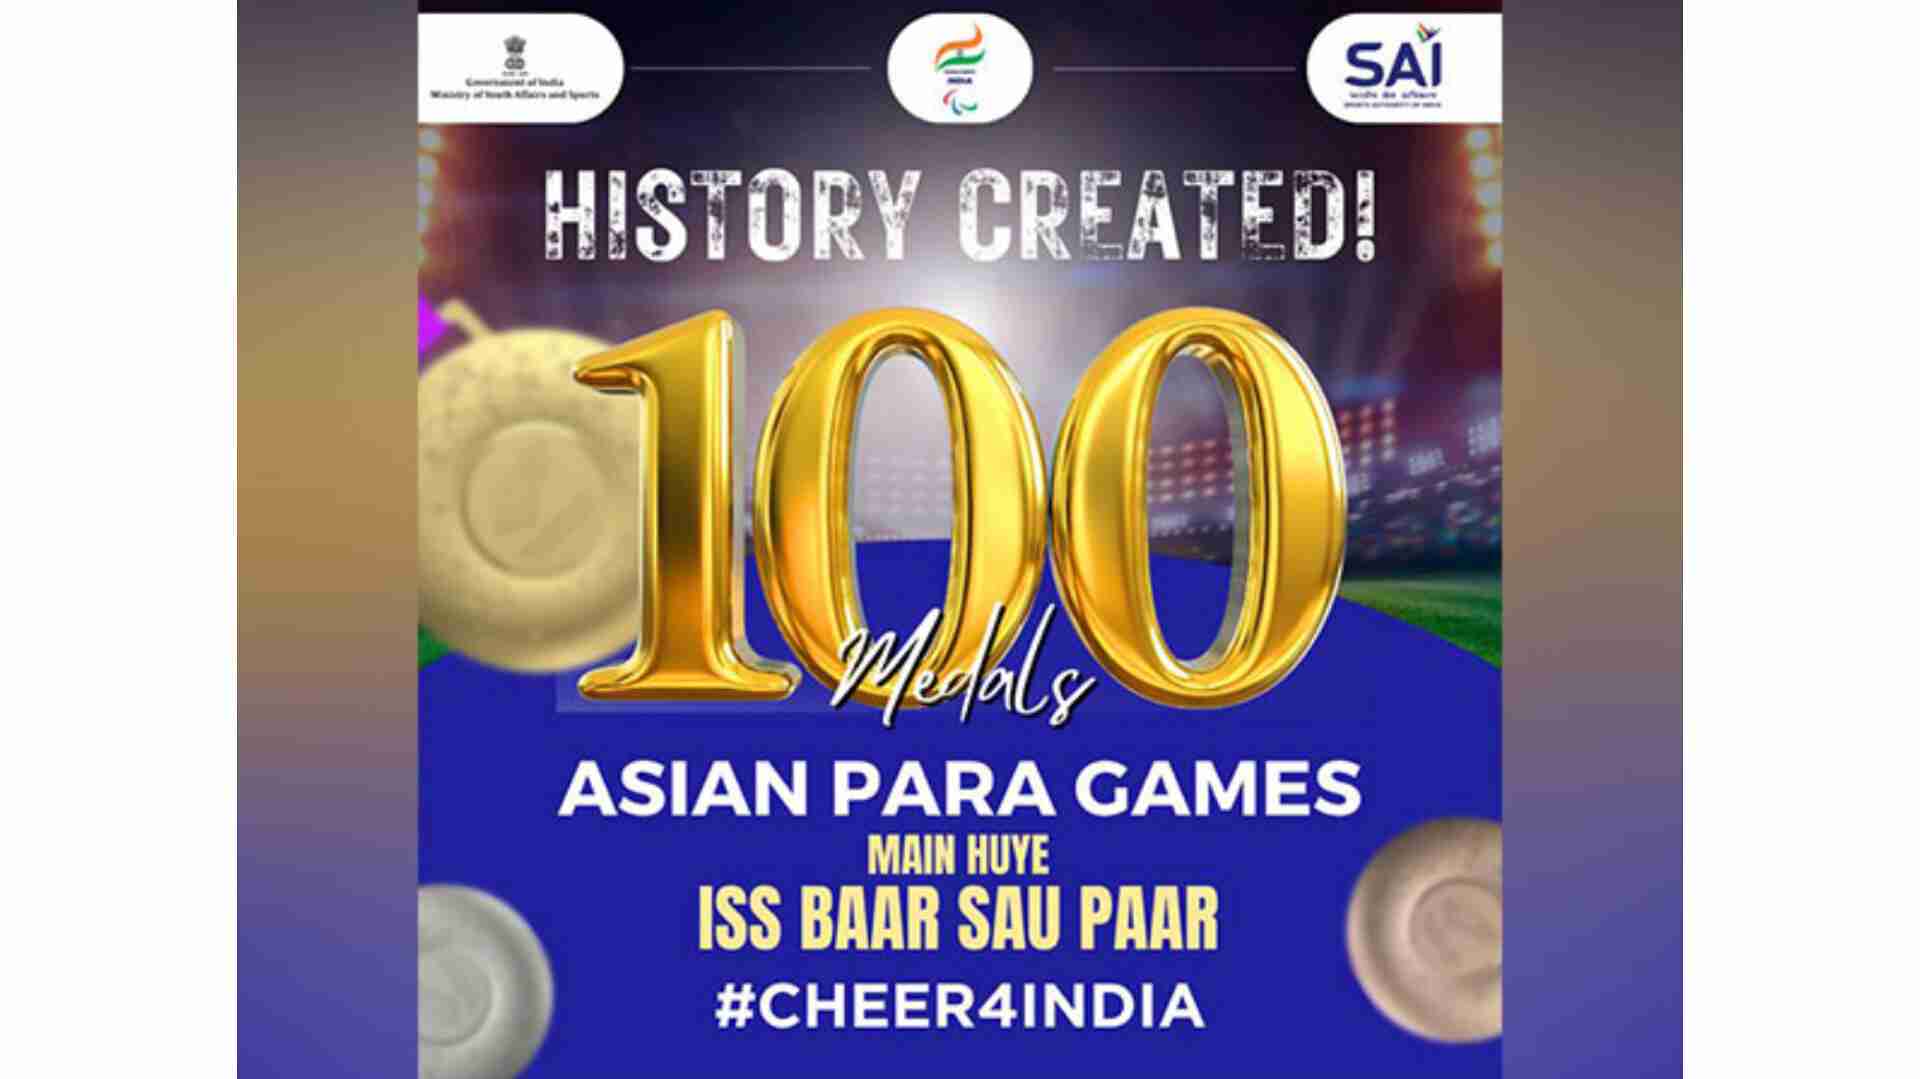 एशियाई पैरा खेलों में भारतीय खिलाड़ियों ने रचा इतिहास, पदकों की संख्या 100 के पार